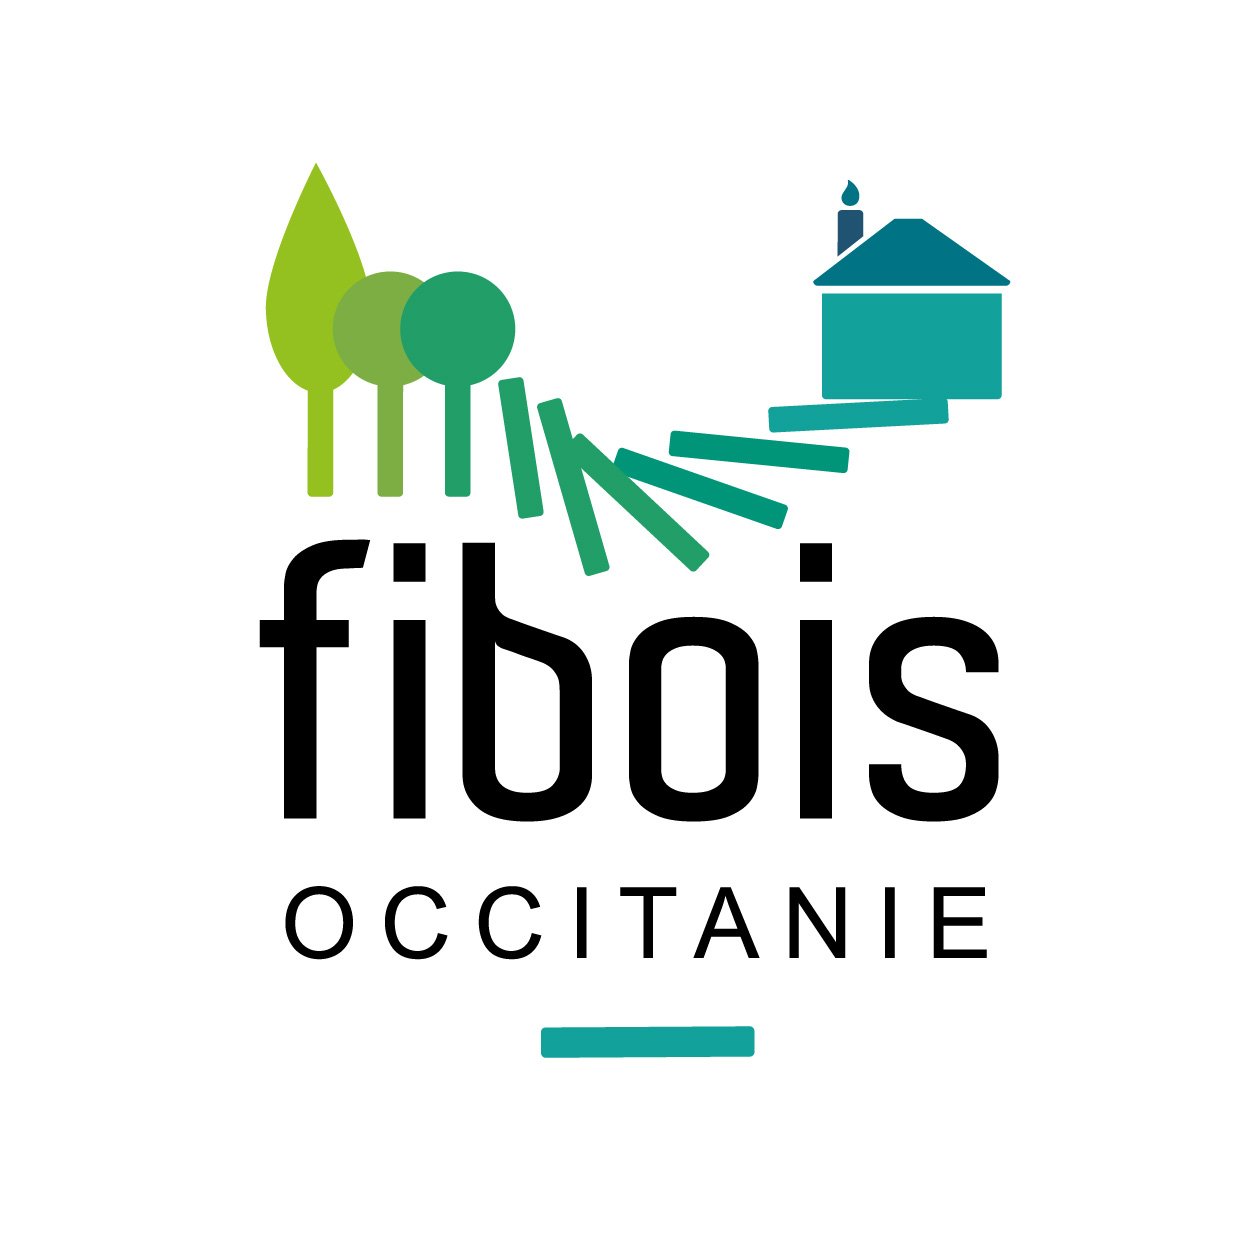 L'interprofession de la filière #forêt #bois #Occitanie #fiboisoccitanie

Instagram : @FiboisOccitanie